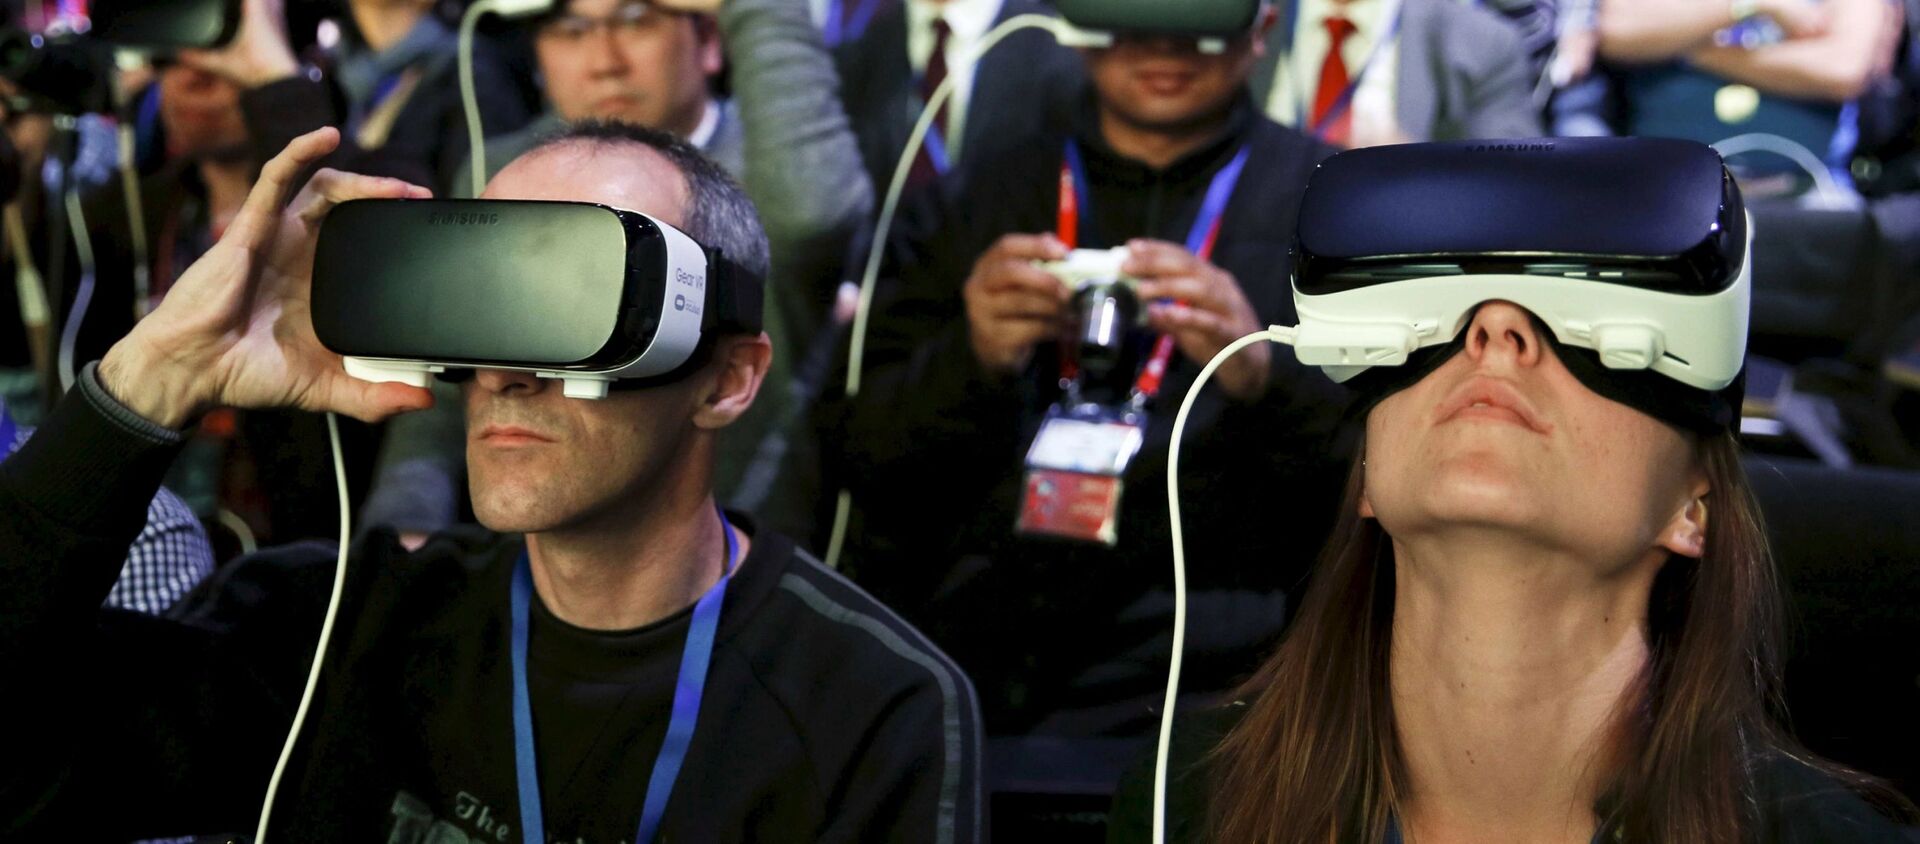 حاضرو مراسم افتتاح عرض الهاتف الخلوي الجديد Samsung S7 يرتدون نظارات العالم الافتراضي Samsung Gear VR، برشلونة، أسبانيا، 21 فبراير/ شباط 2016. - سبوتنيك عربي, 1920, 06.02.2018